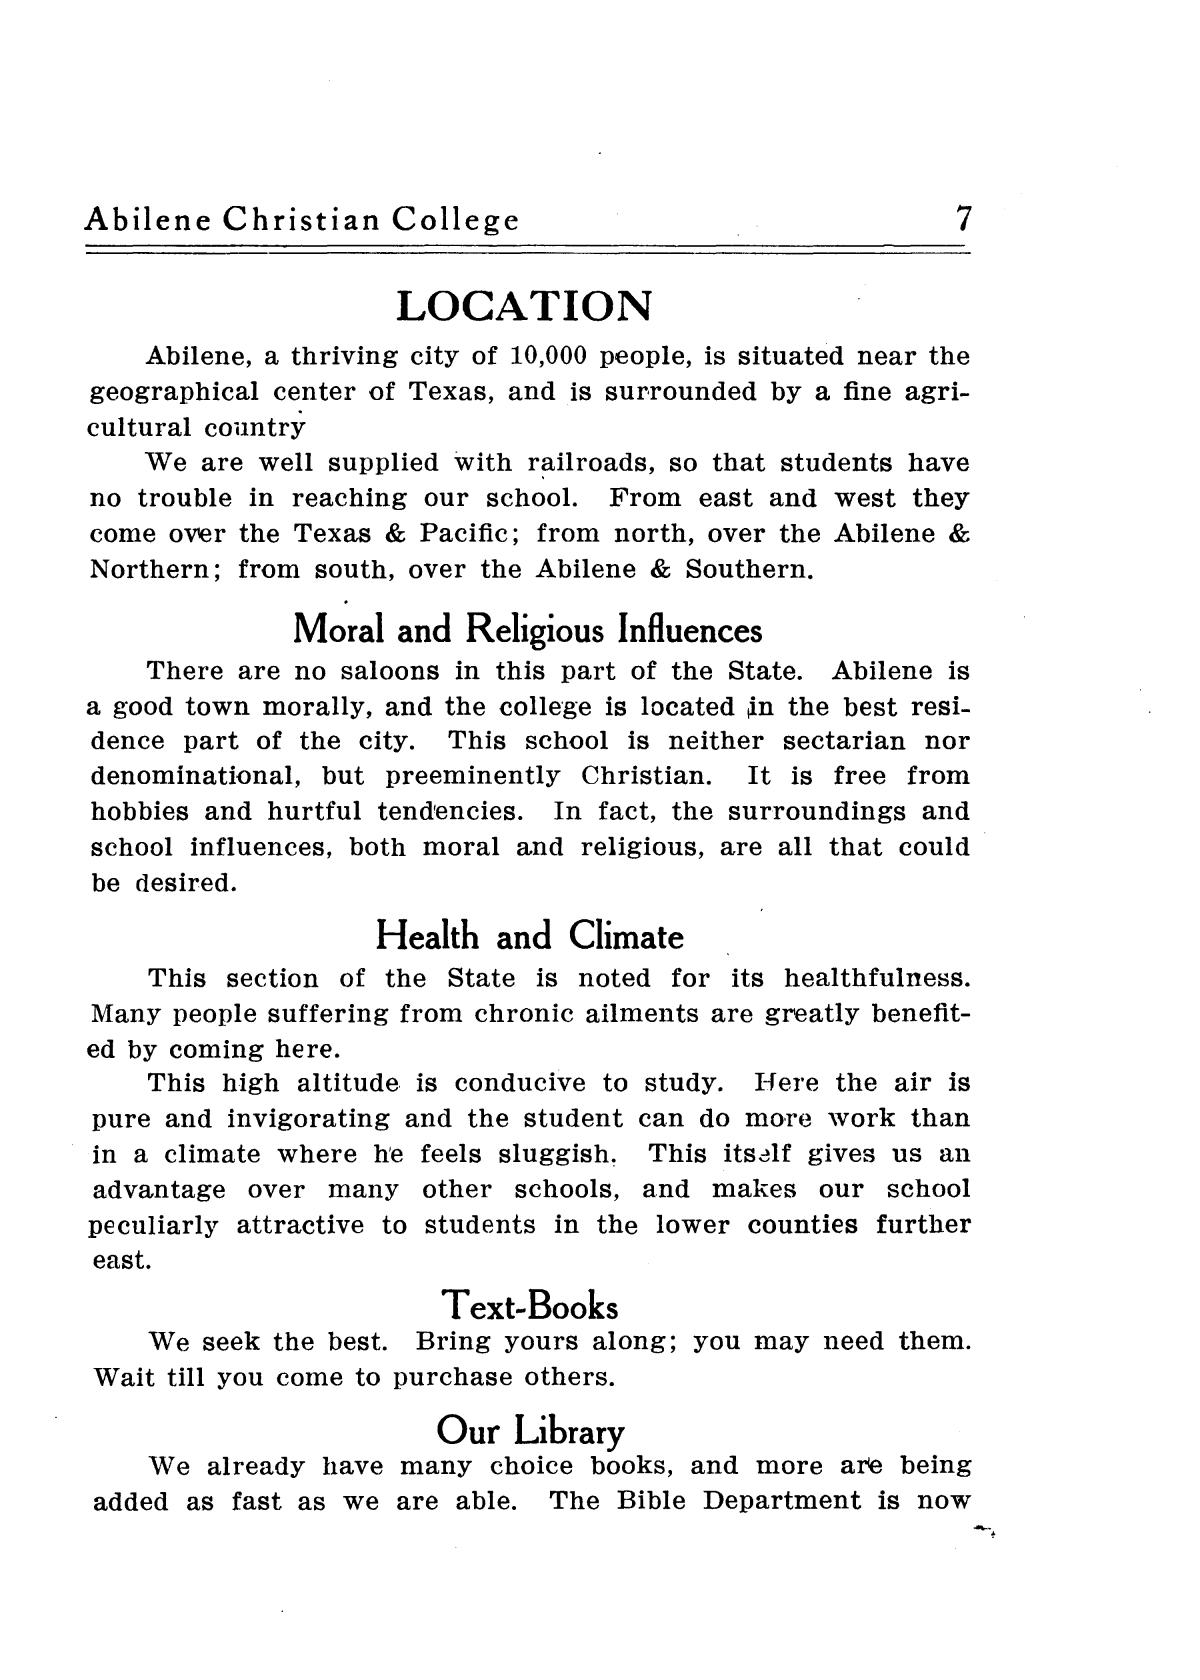 Catalog of Abilene Christian College, 1909-1910
                                                
                                                    7
                                                